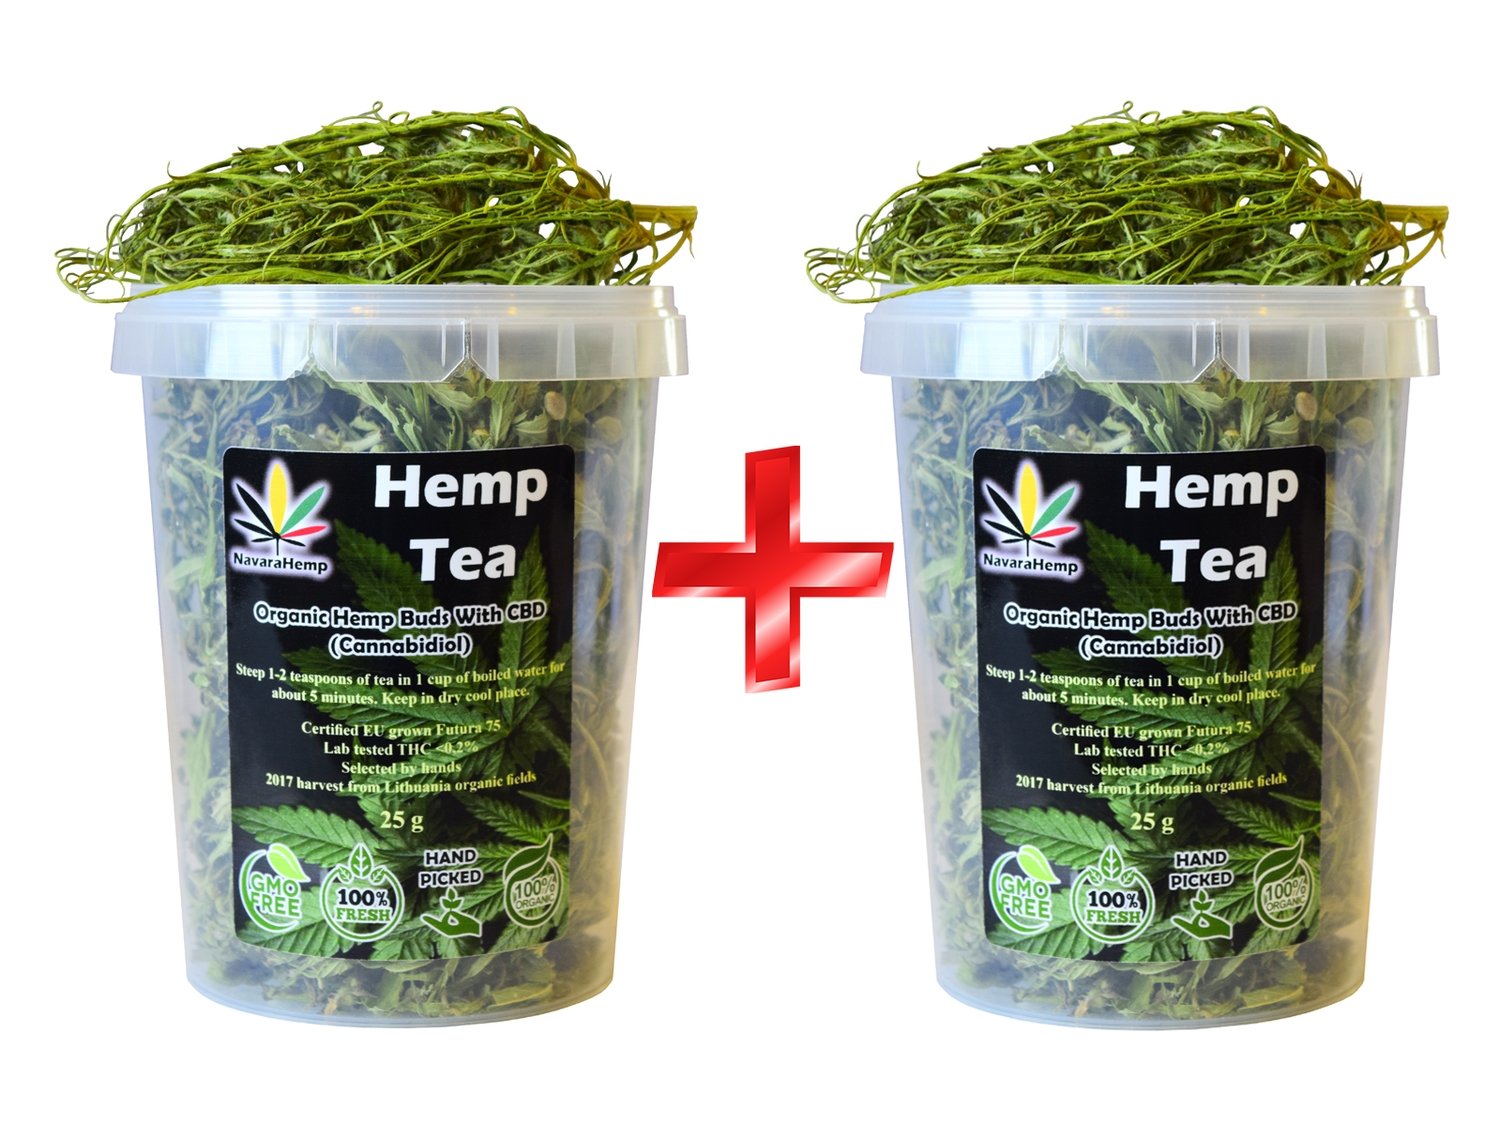 Organic Han Picked Hemp Tea Buds 2 x 25g